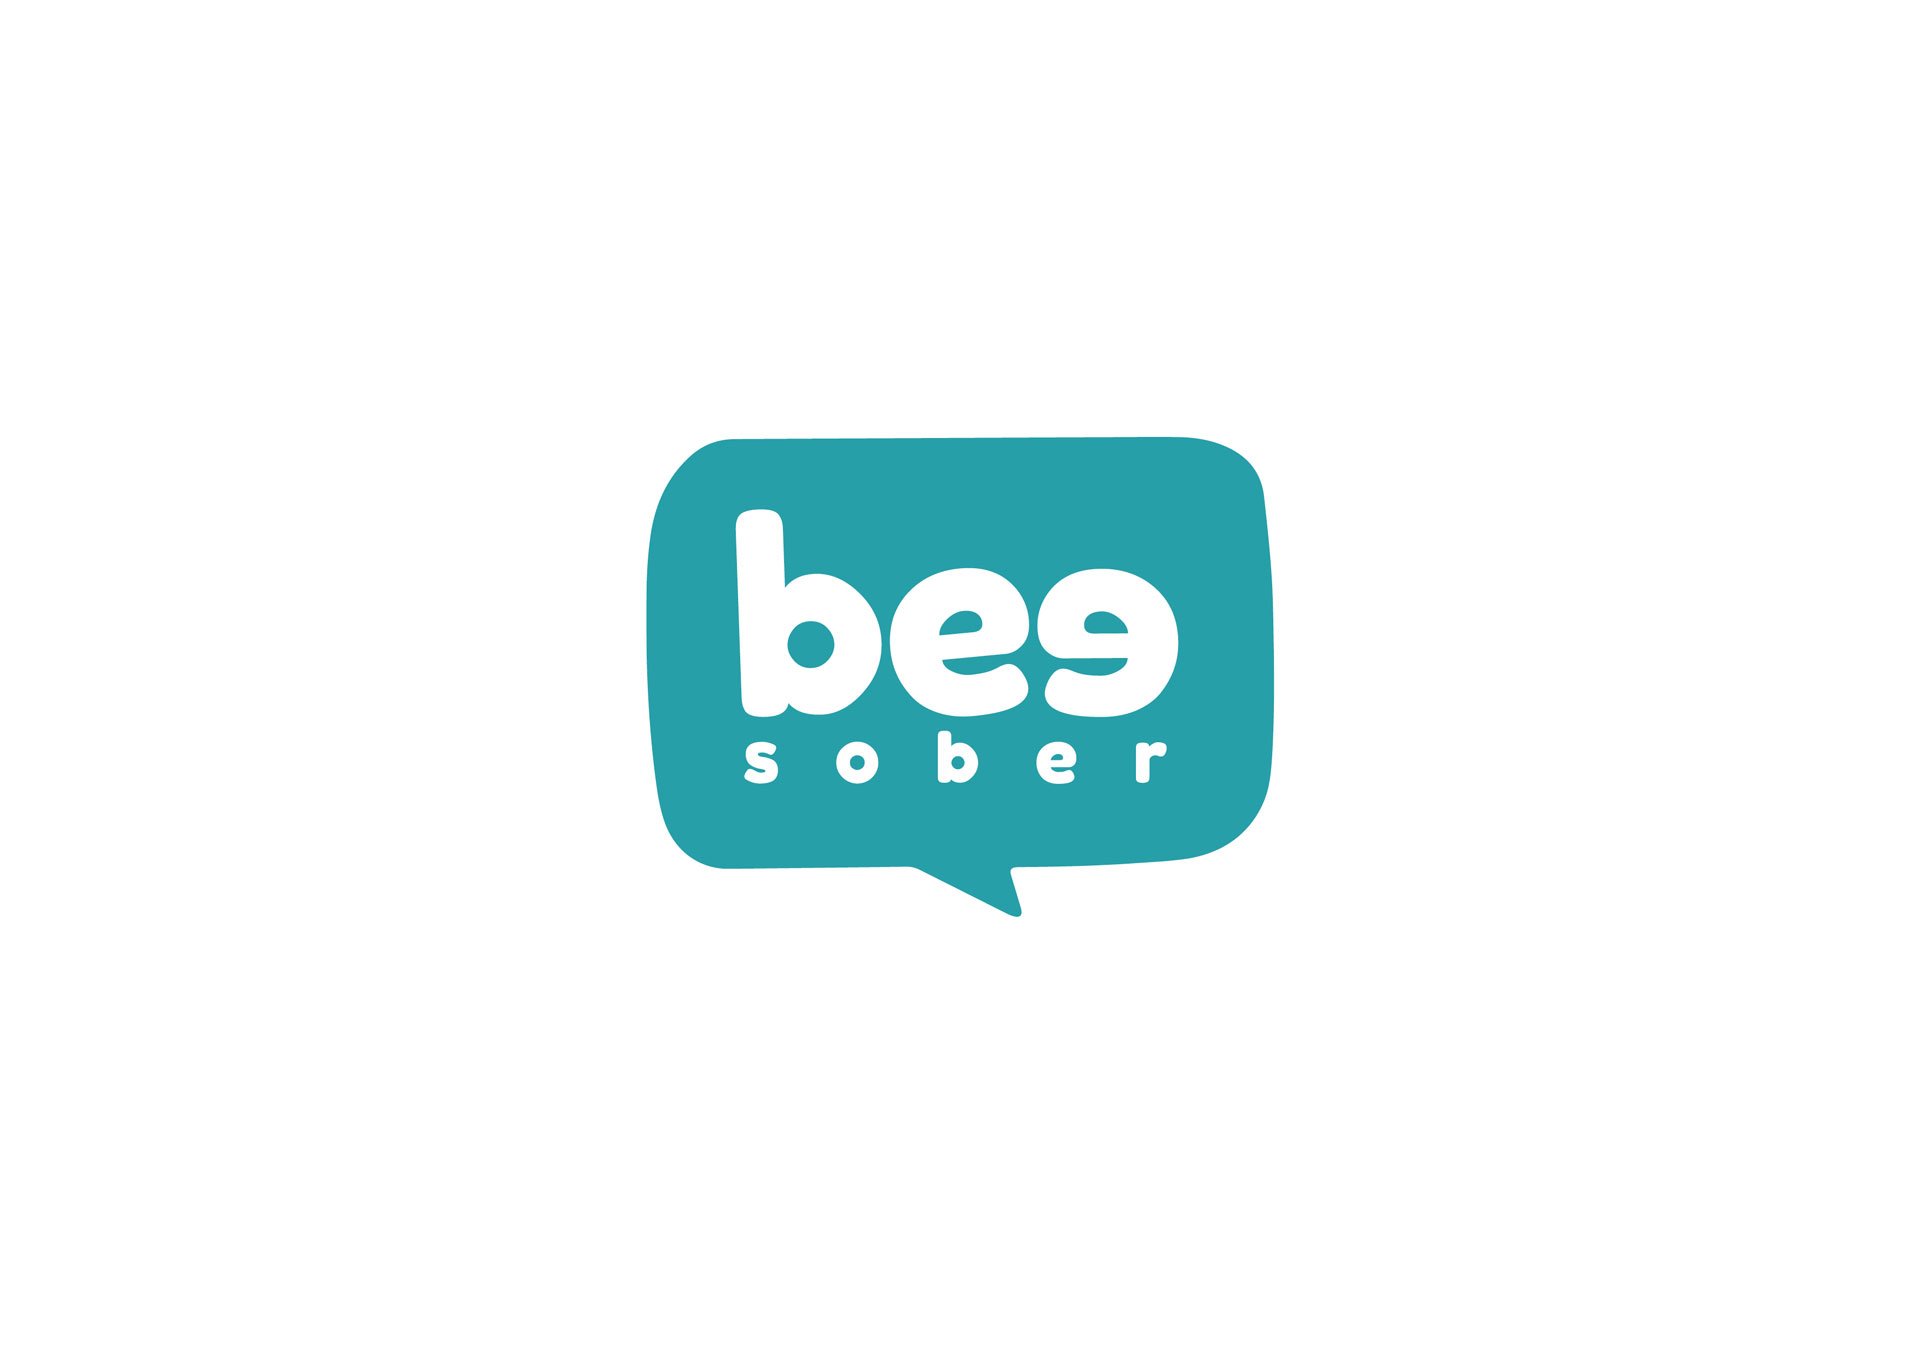 bee_sober-health_wellness-branding-full_logo-tim_marner_branding_agency_bolton.jpg